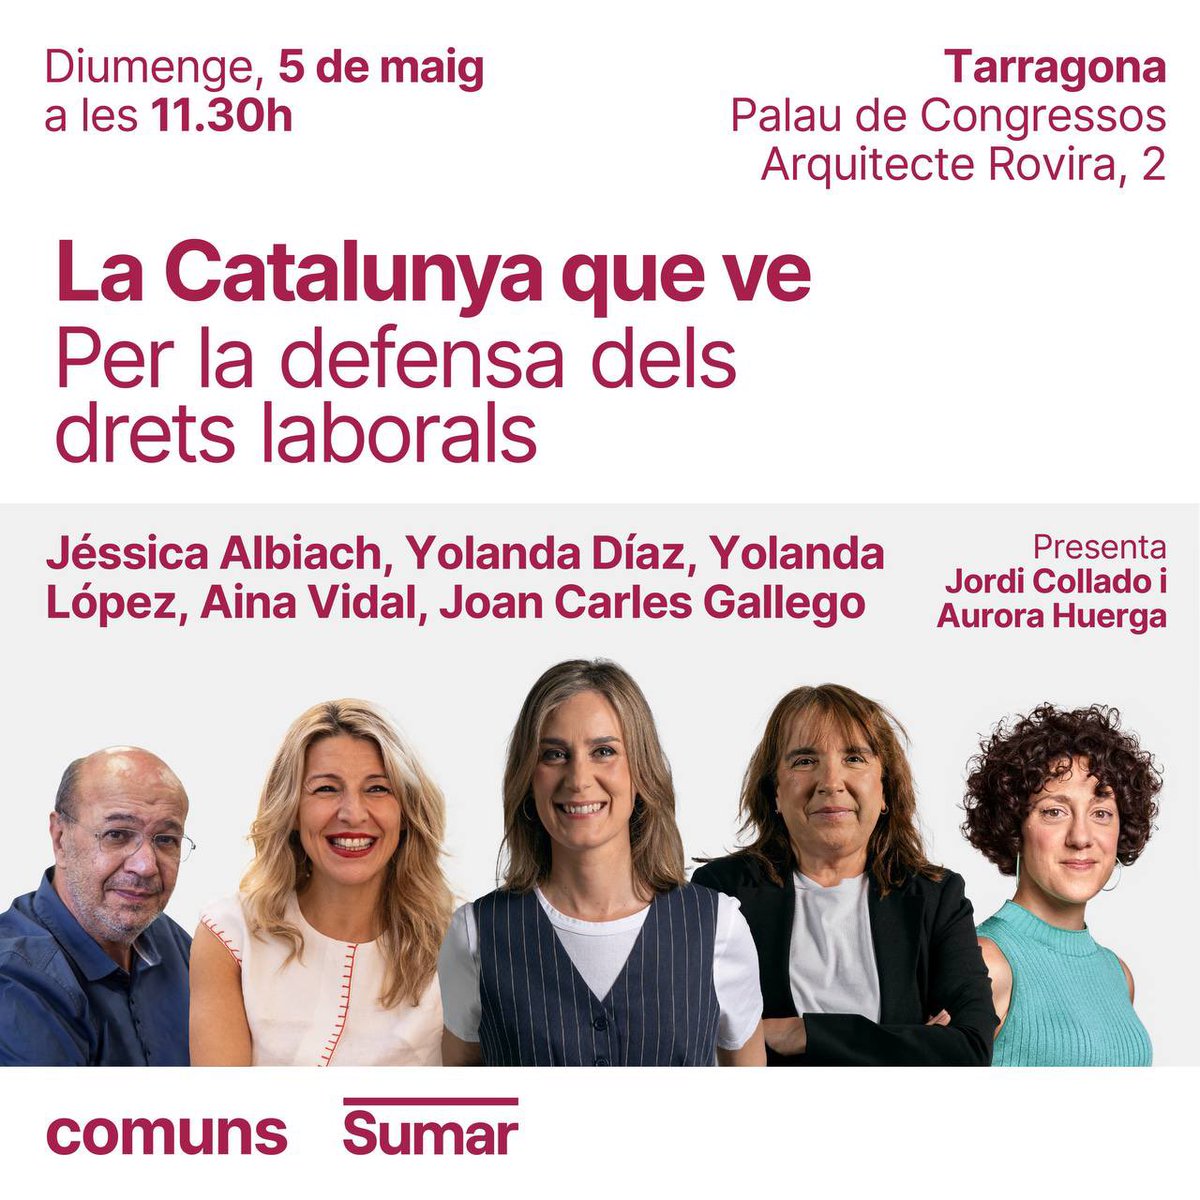 Ens veiem aquest diumenge a Tarragona, a partir de les 11.30h, al Palau de Congressos. Juntes conquerirem l'esperança. Juntes construirem la Catalunya que ve 💗